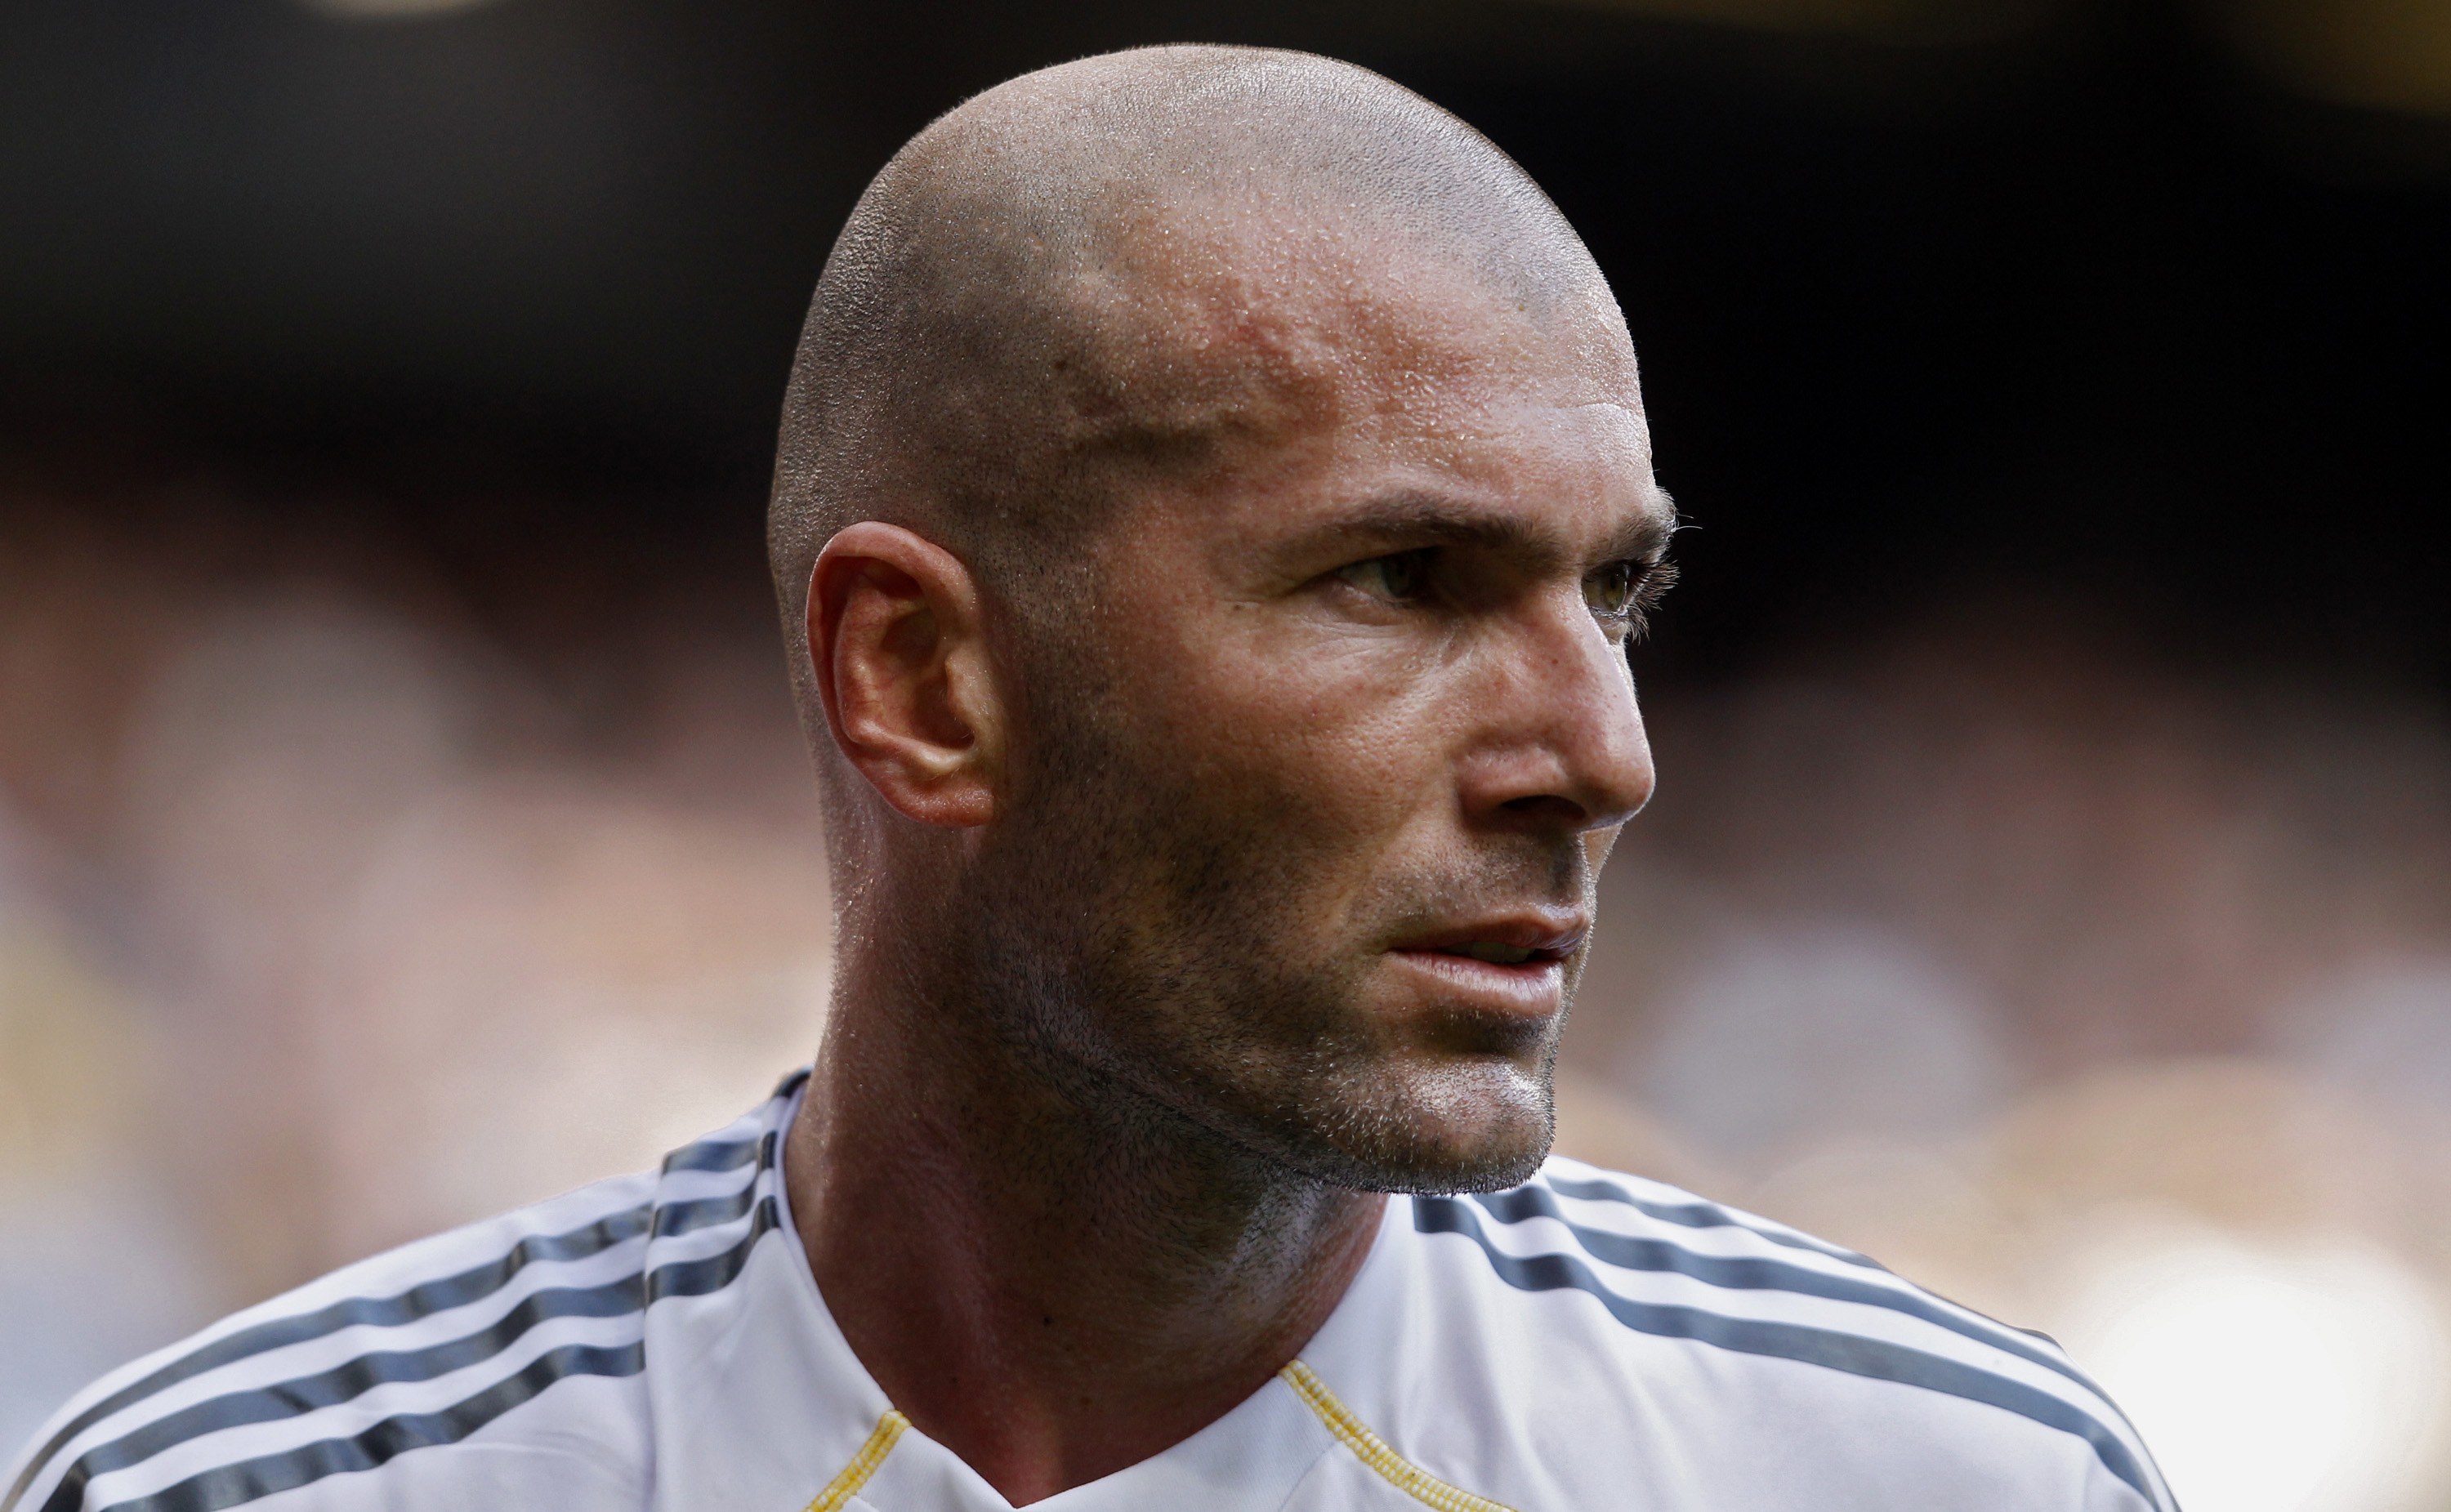 Melhores papéis de parede de Zinedine Zidane para tela do telefone